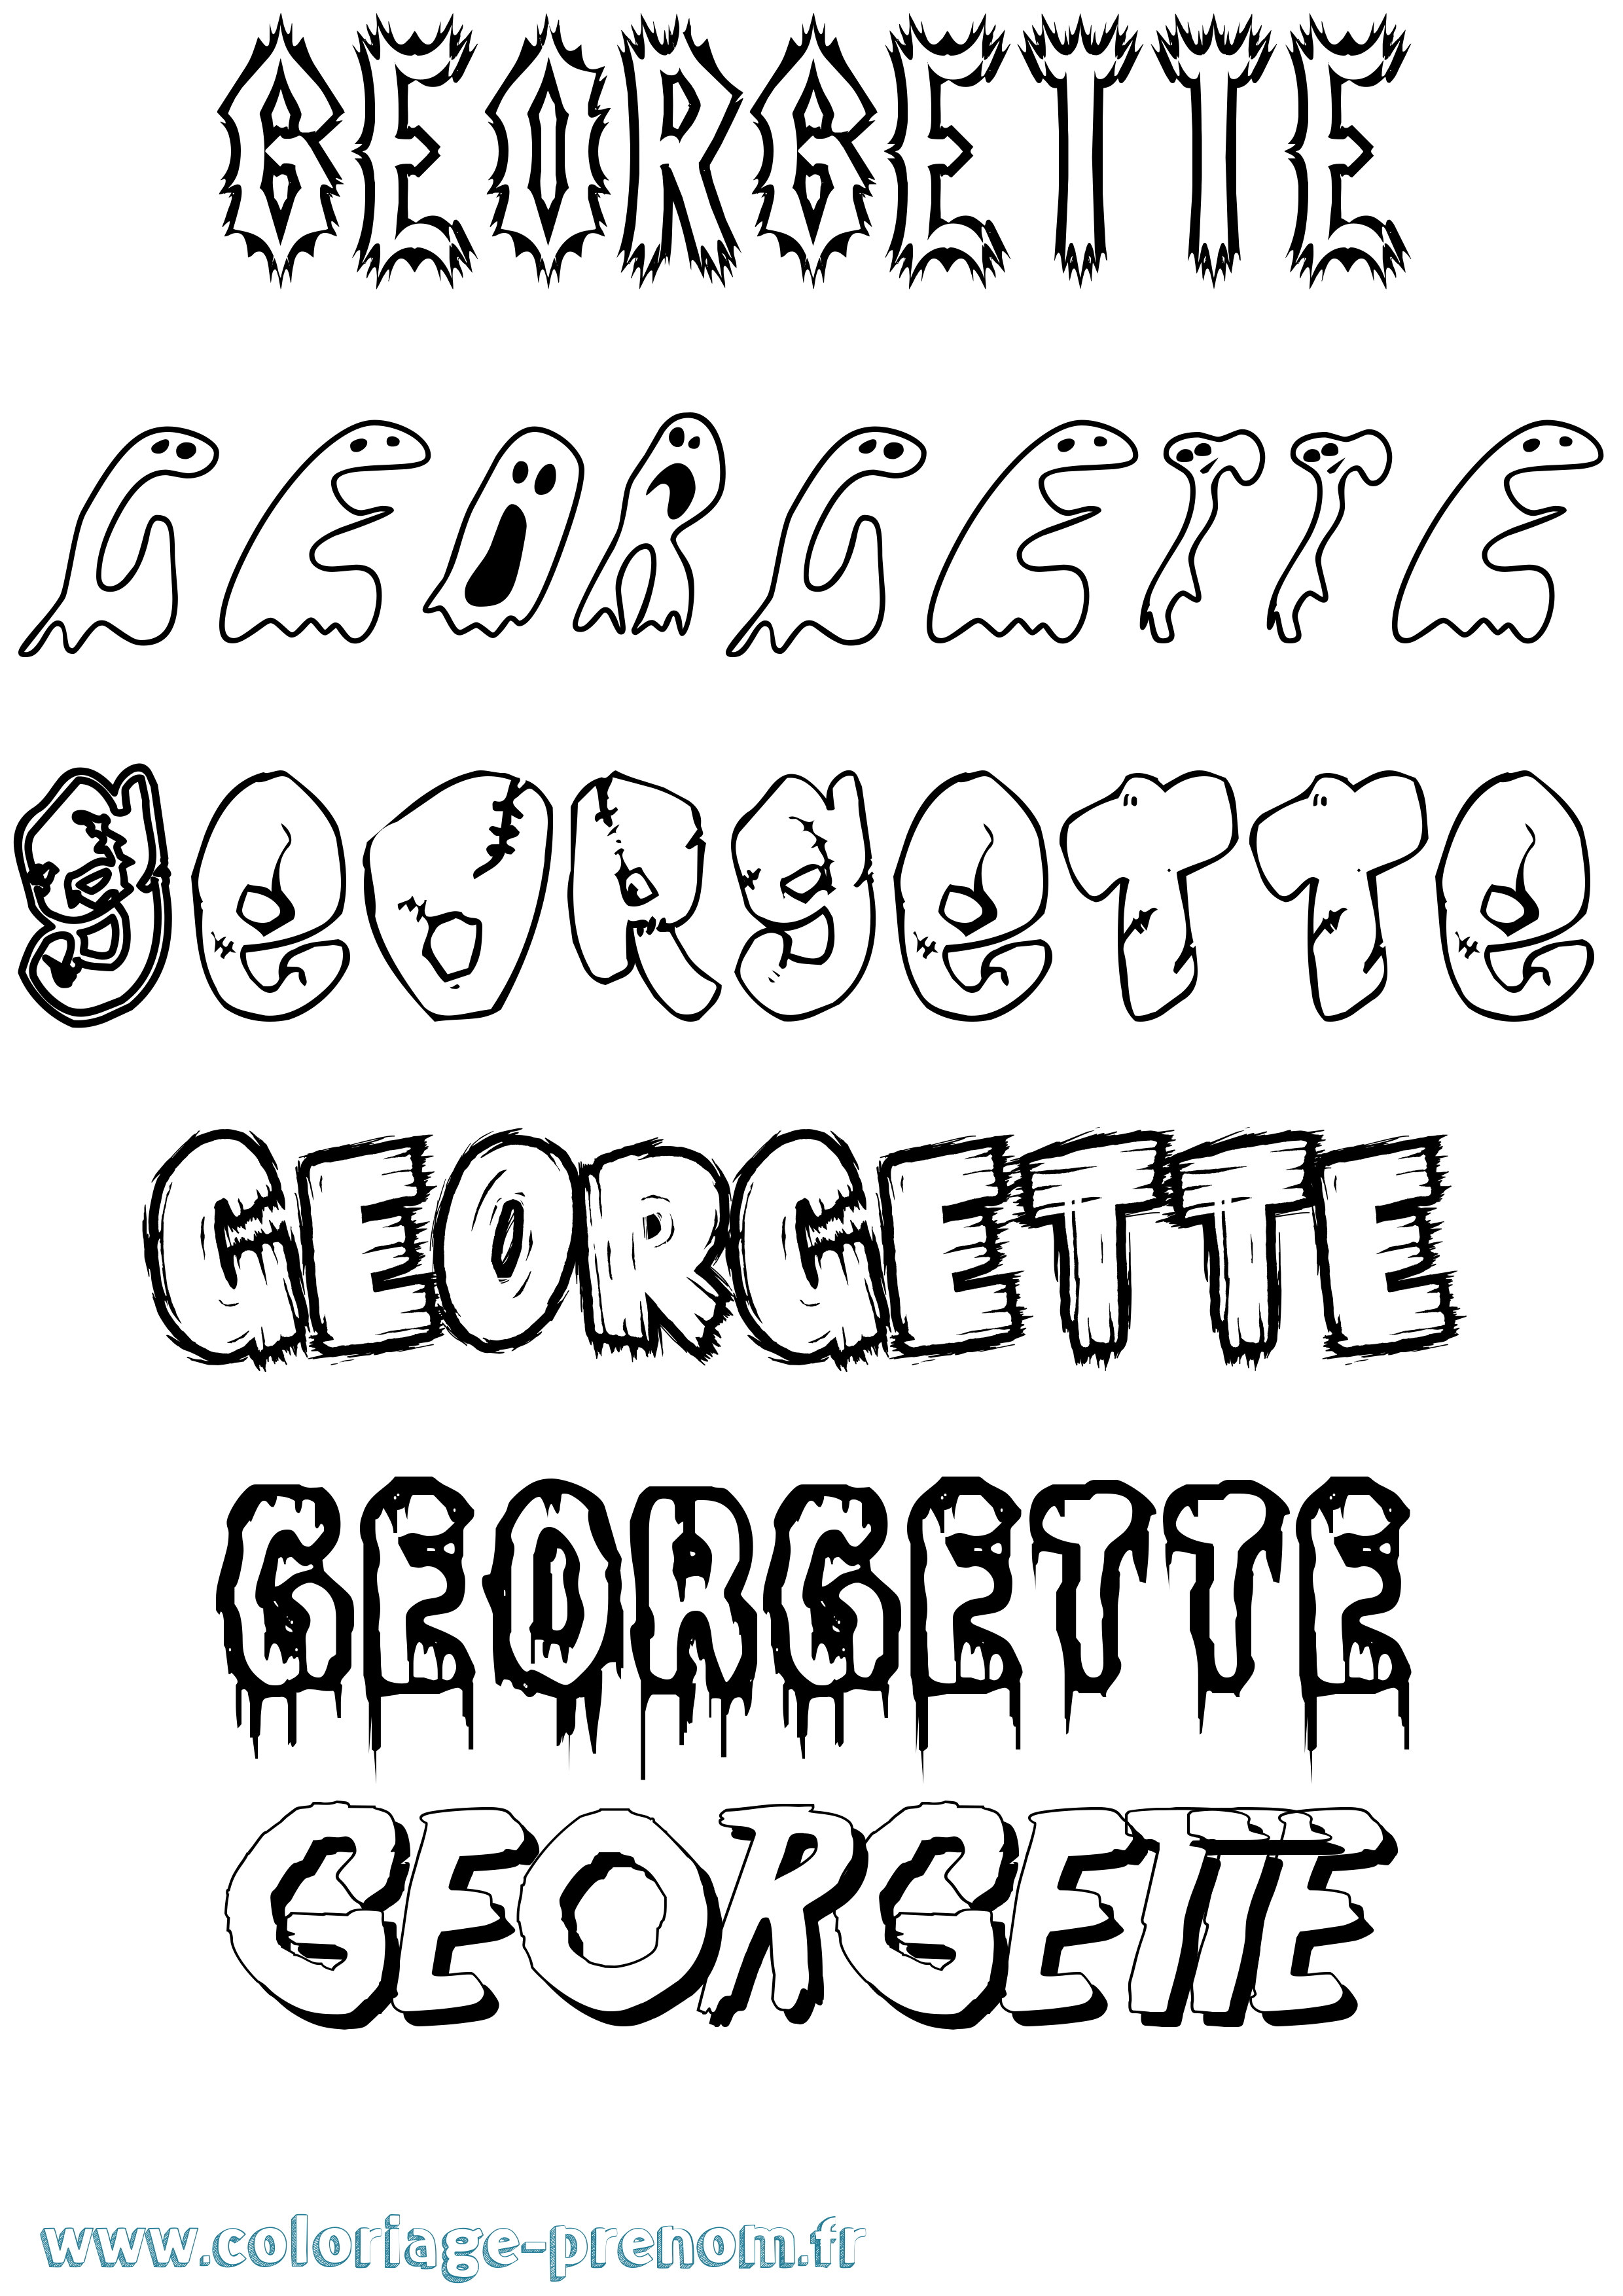 Coloriage prénom Georgette Frisson